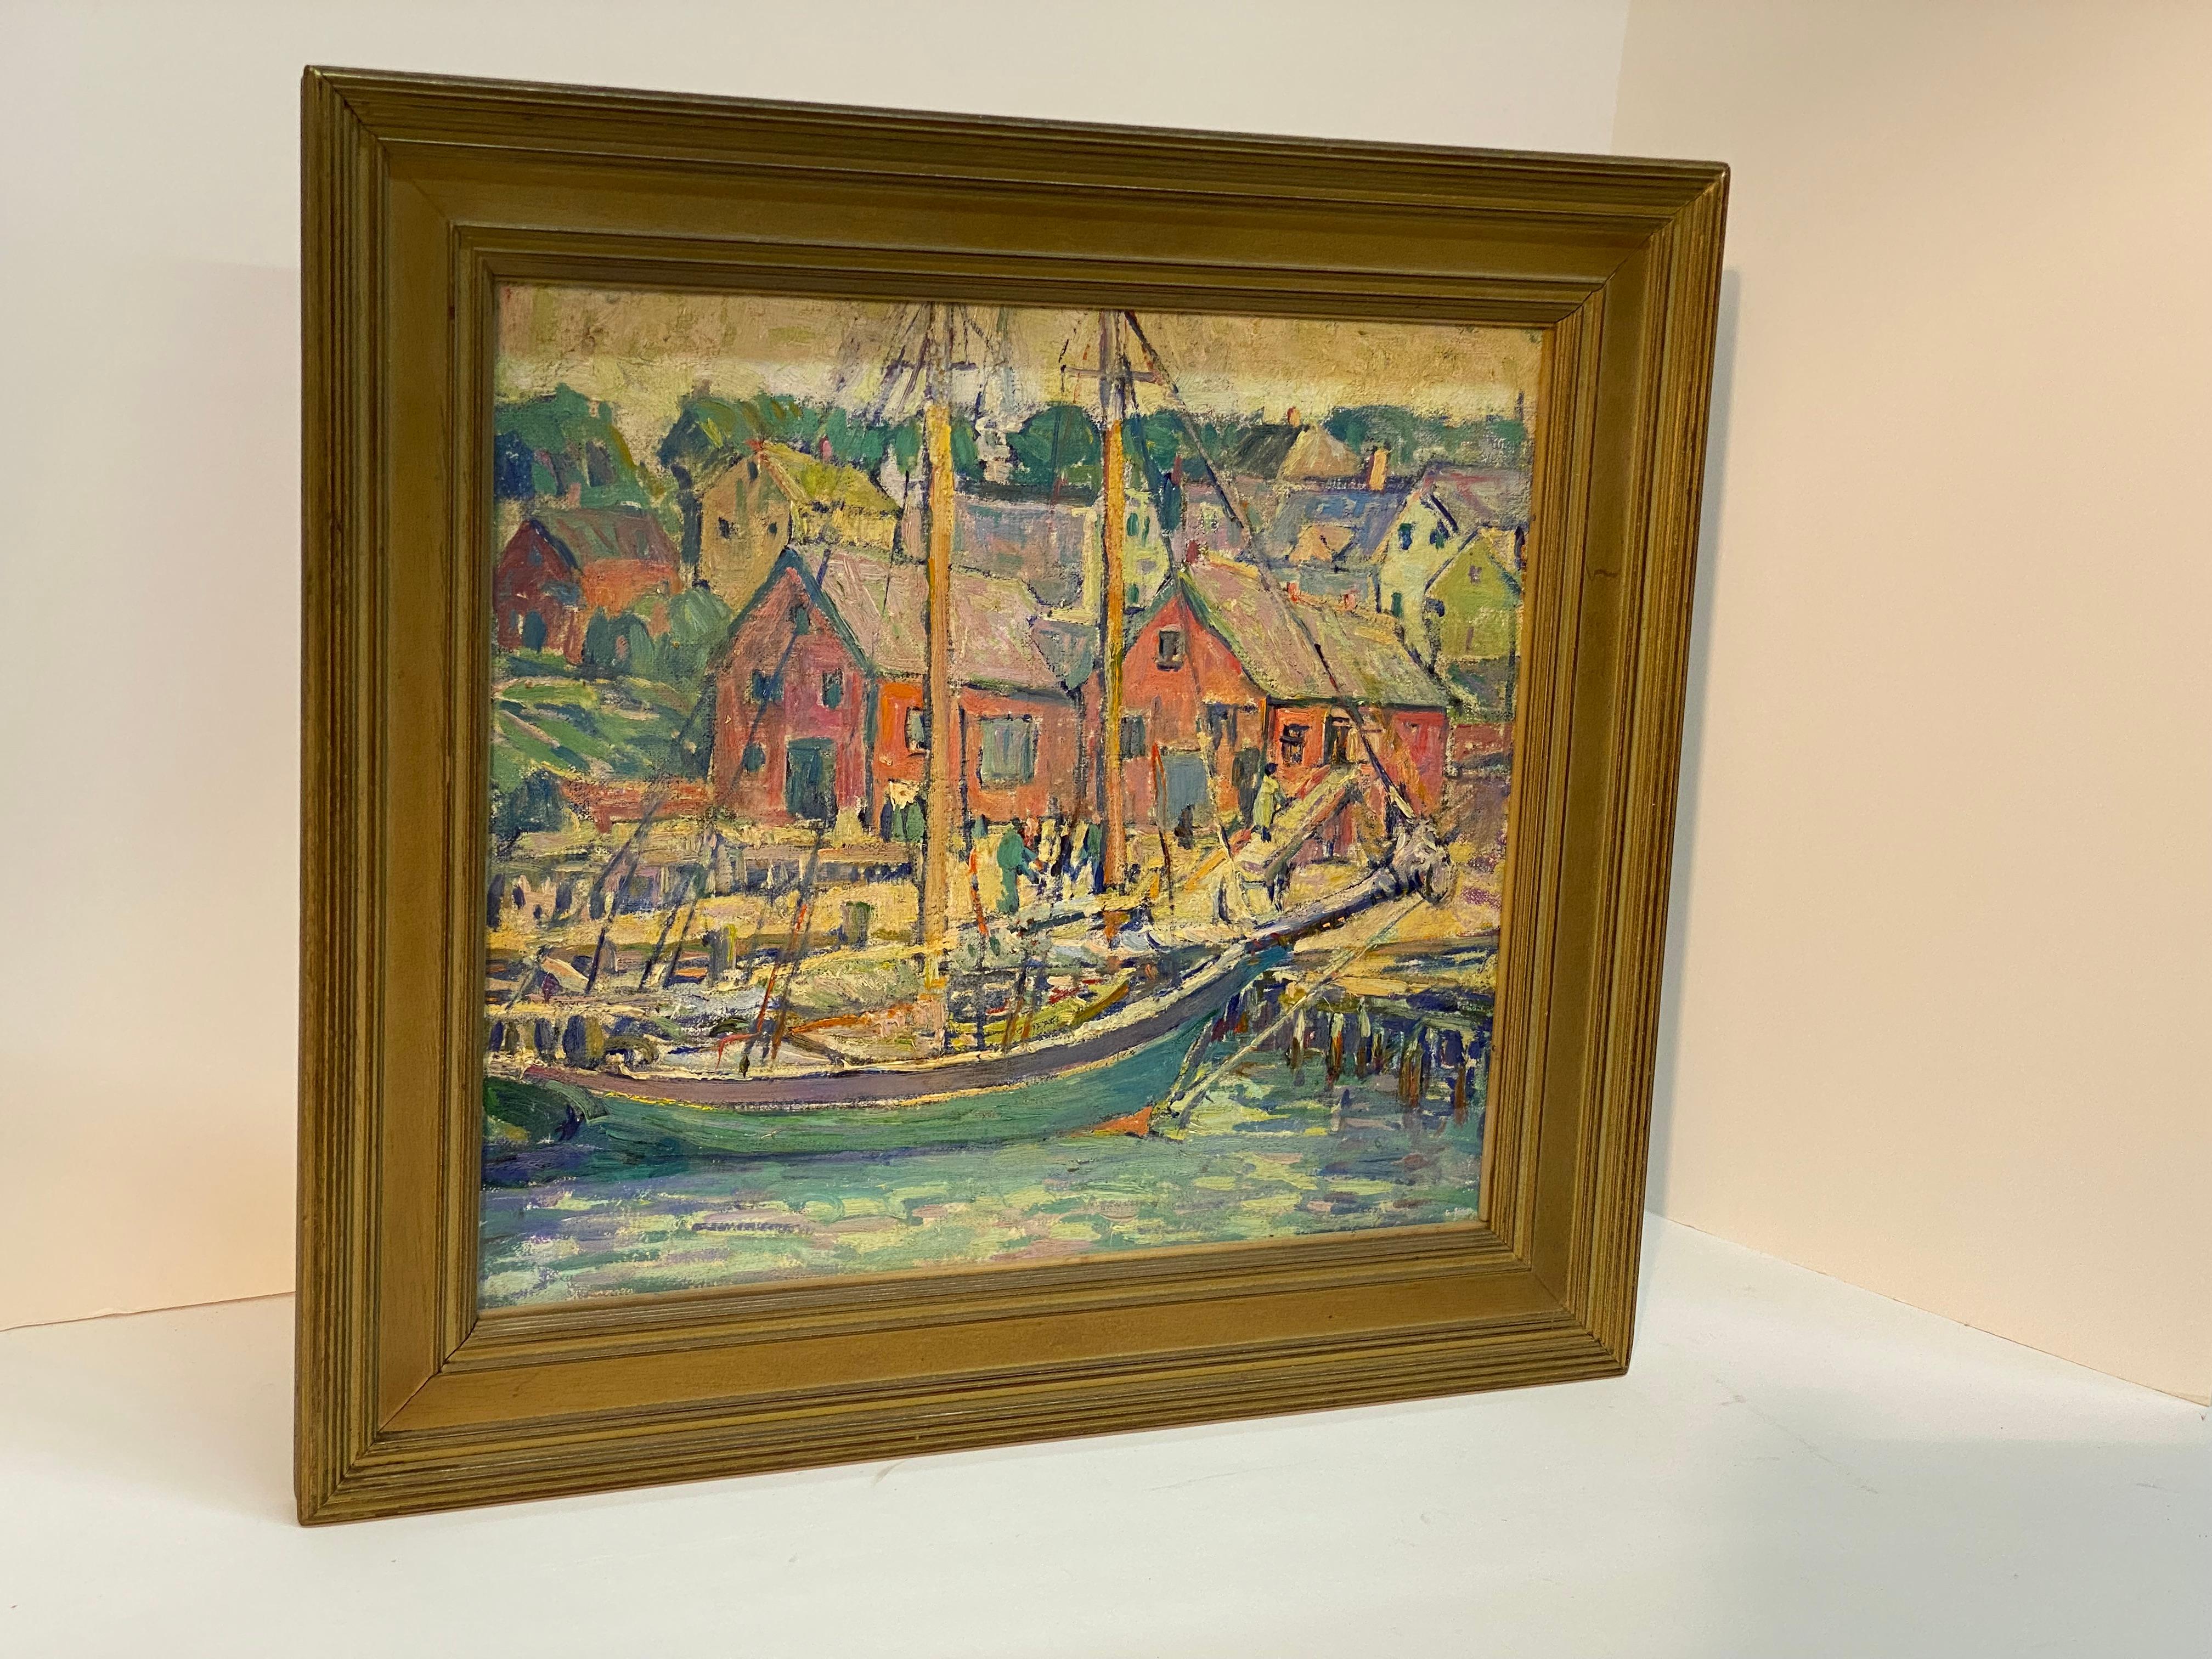 Katherine E Bard Cherry (1860-1931) Ölgemälde auf Leinwand aus der Zeit des amerikanischen Impressionismus und des Kunsthandwerks. Leinwand auf Karton montiert. Auf der Rückseite befindet sich das originale Ausstellungsschild der Saint Louis Art